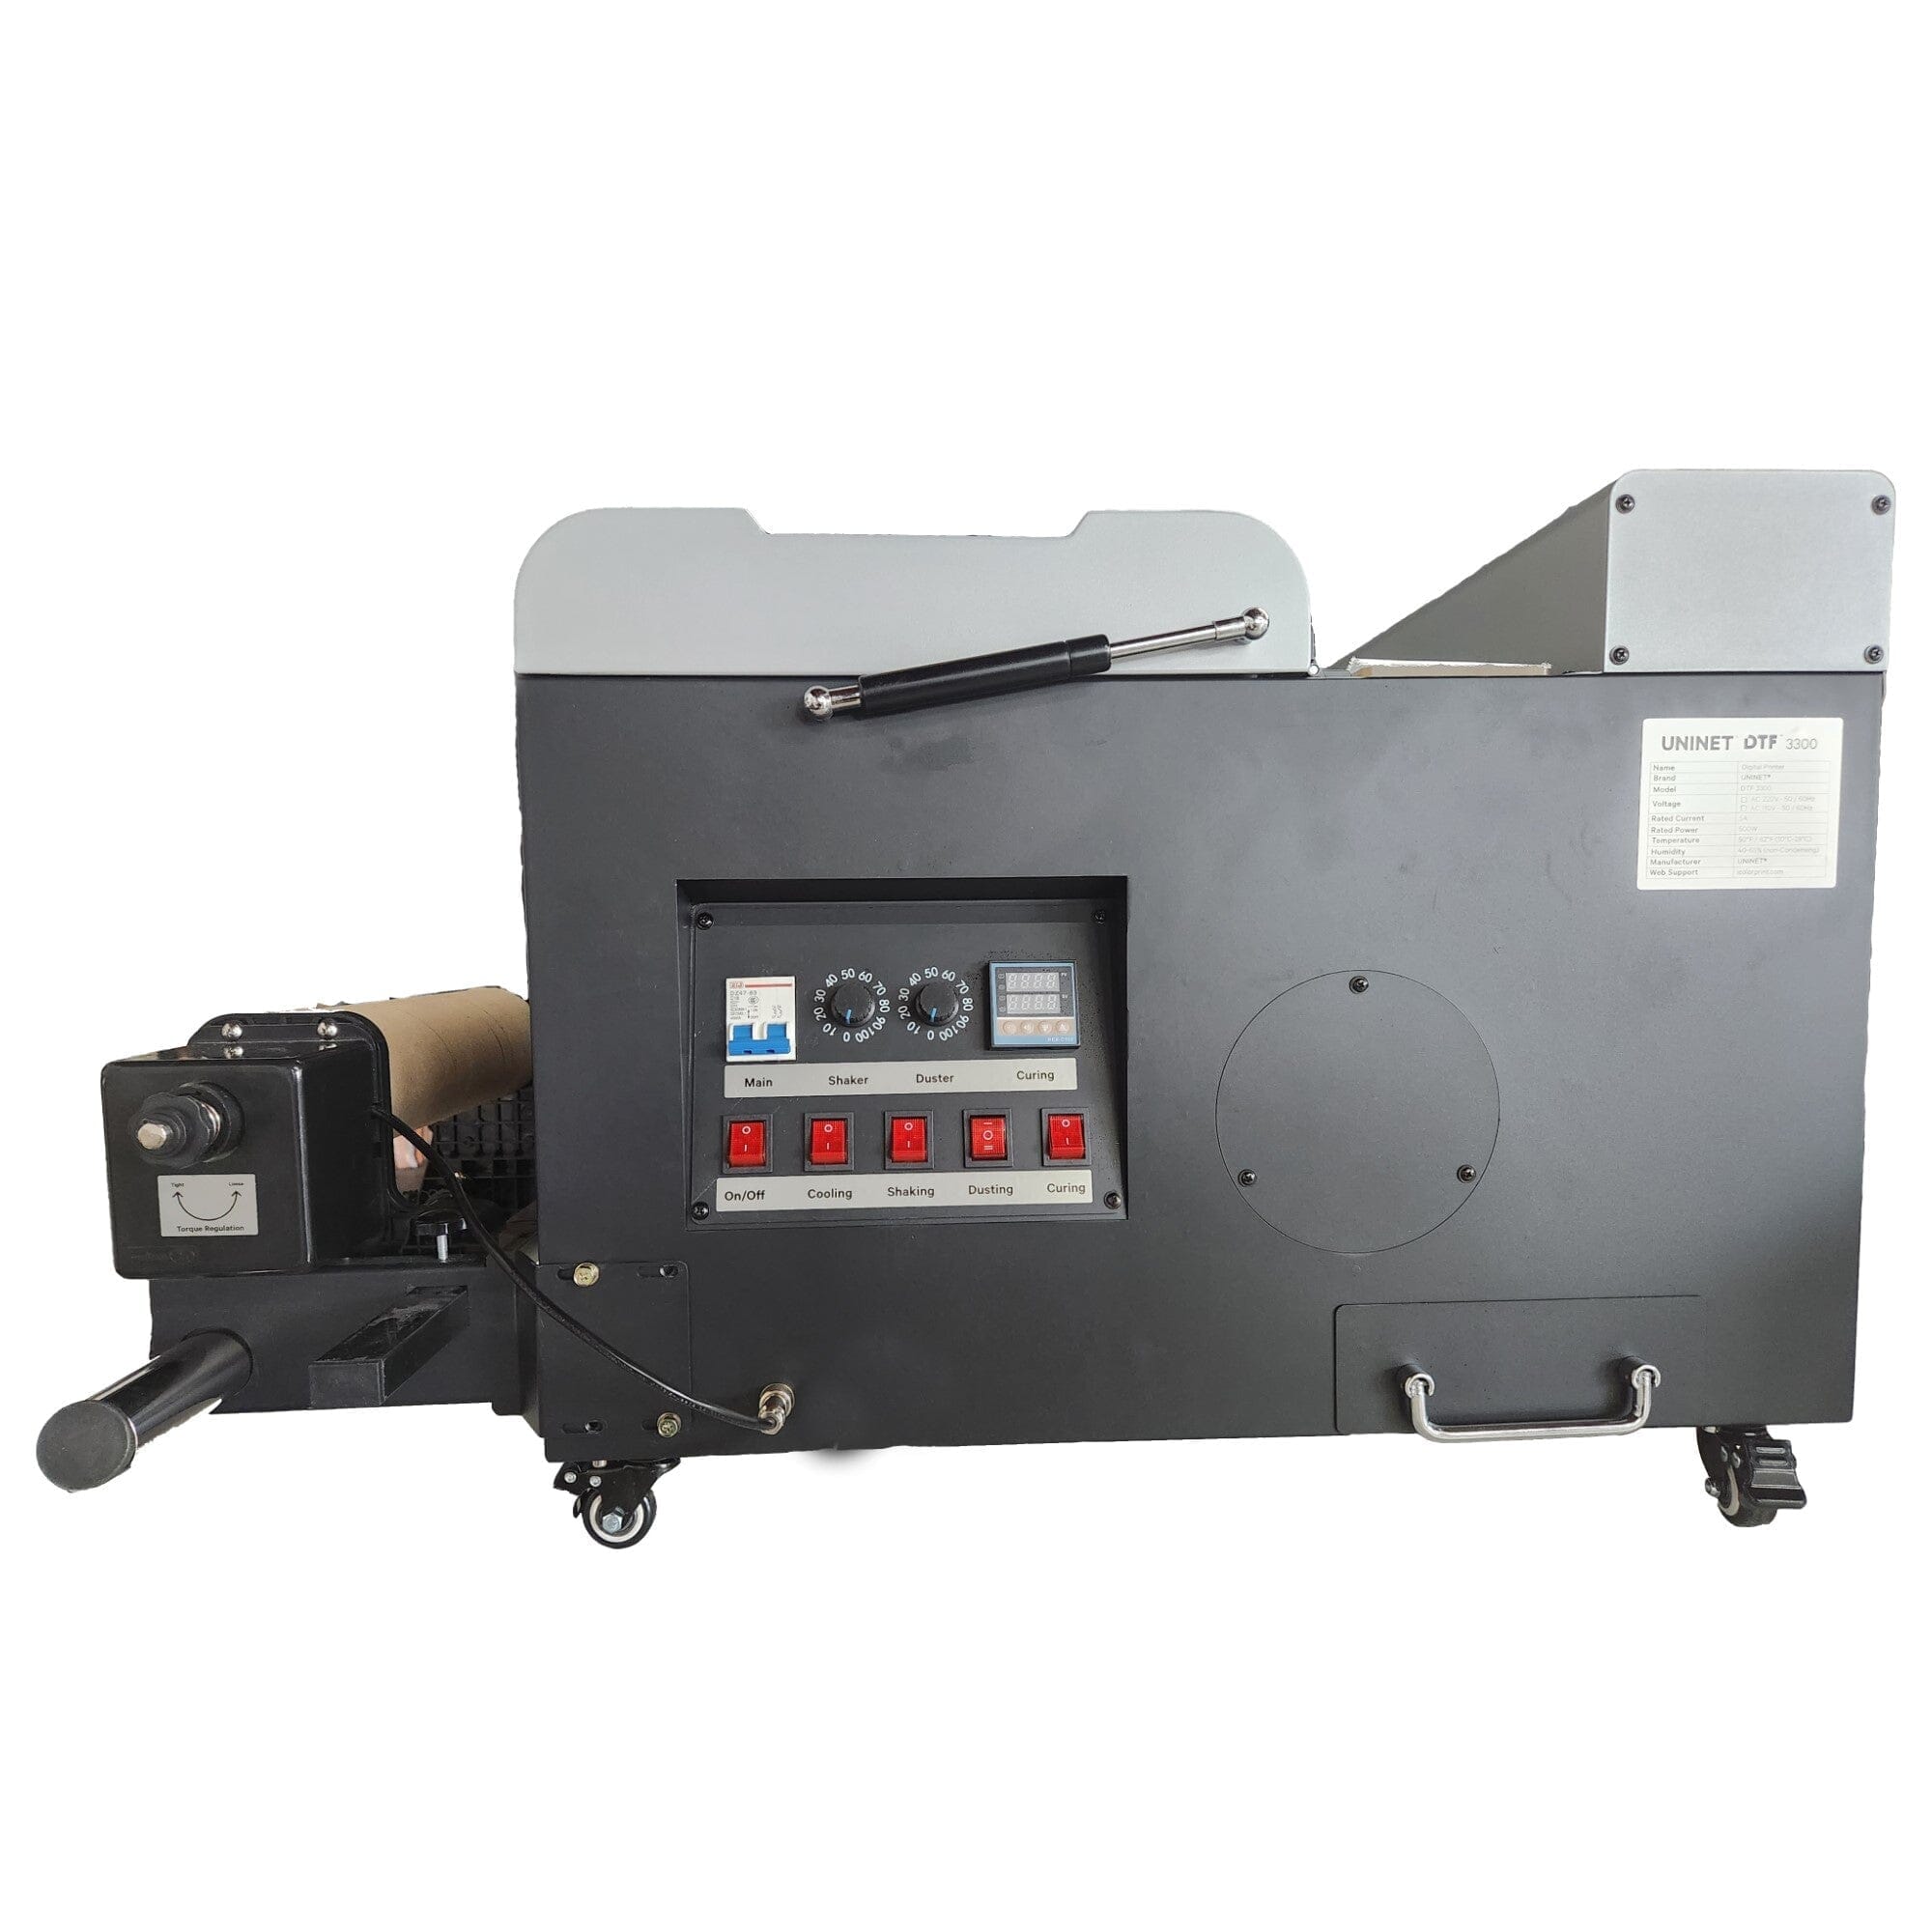 Uninet DTF 1000 Digital Transfer Printer  Heat Transfer Vinyl 4u – HEAT  TRANSFER VINYL 4U